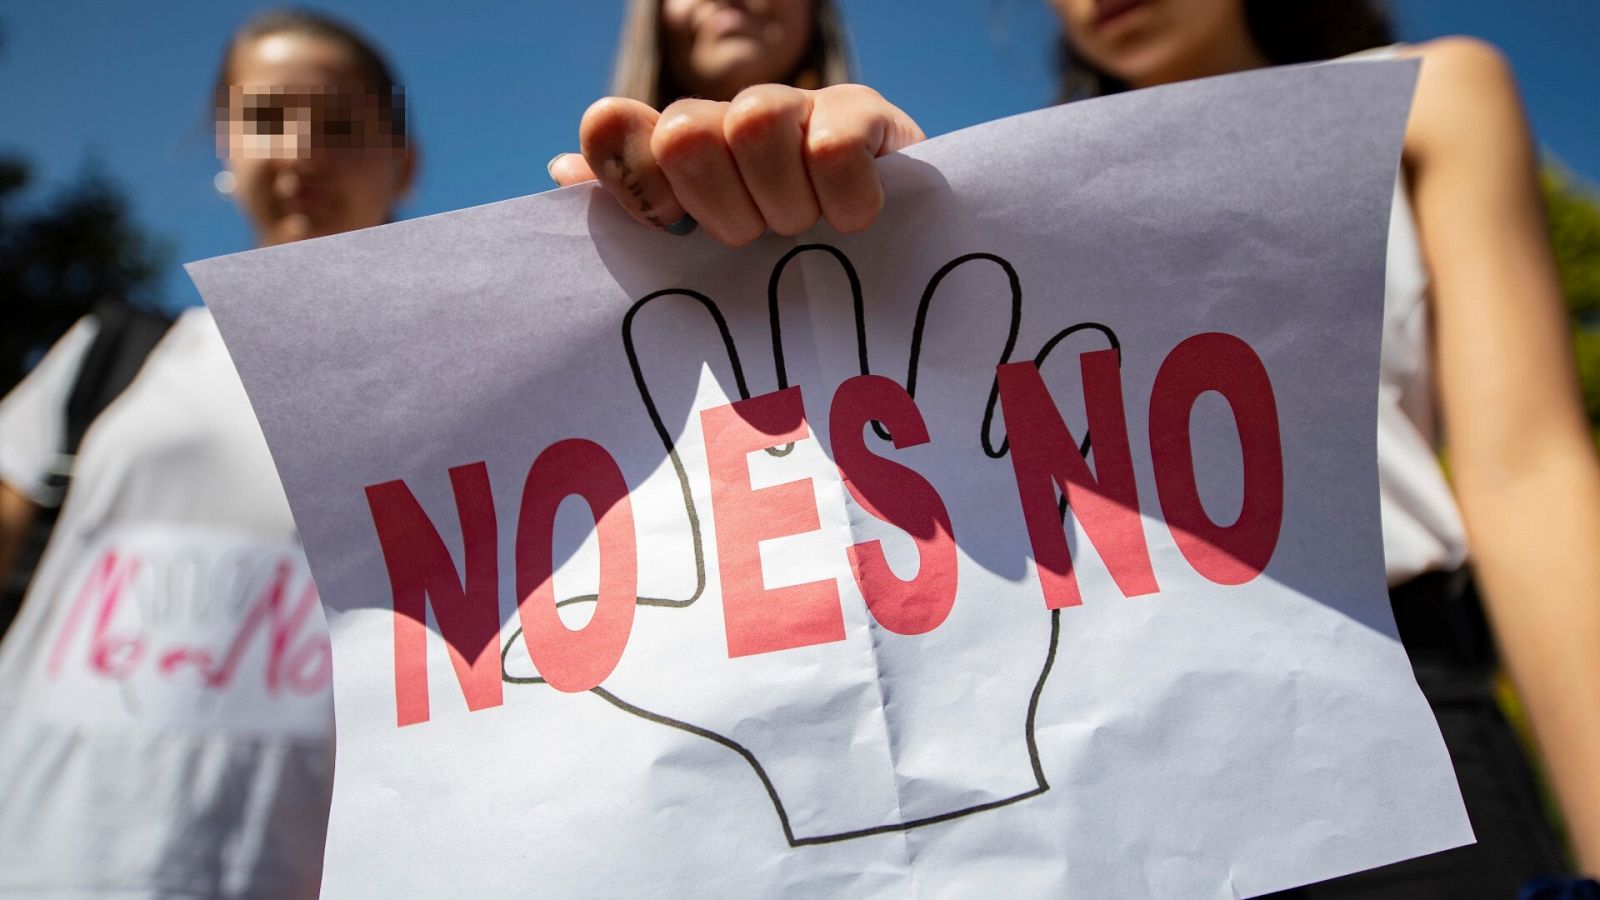 Violencia sexual en España: alumnas de un instituto en Toledo muestran carteles de 'No es no'